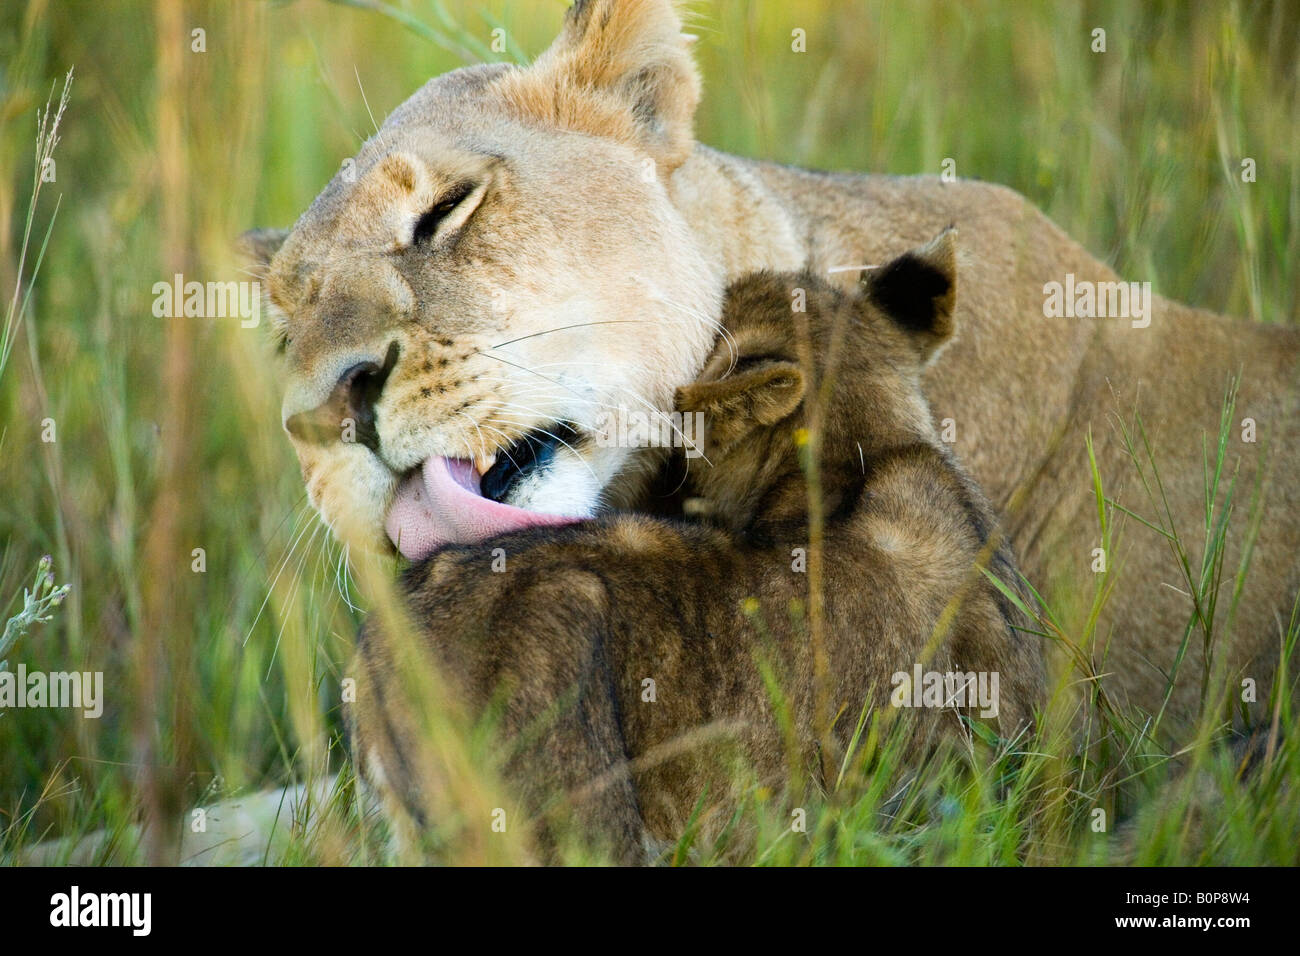 Lion mère nettoie son petit bébé avec sa grosse langue rose alors que la cub s'étire son visage contre son cou dans l'herbe verte l'Okavango savane Botswana Banque D'Images